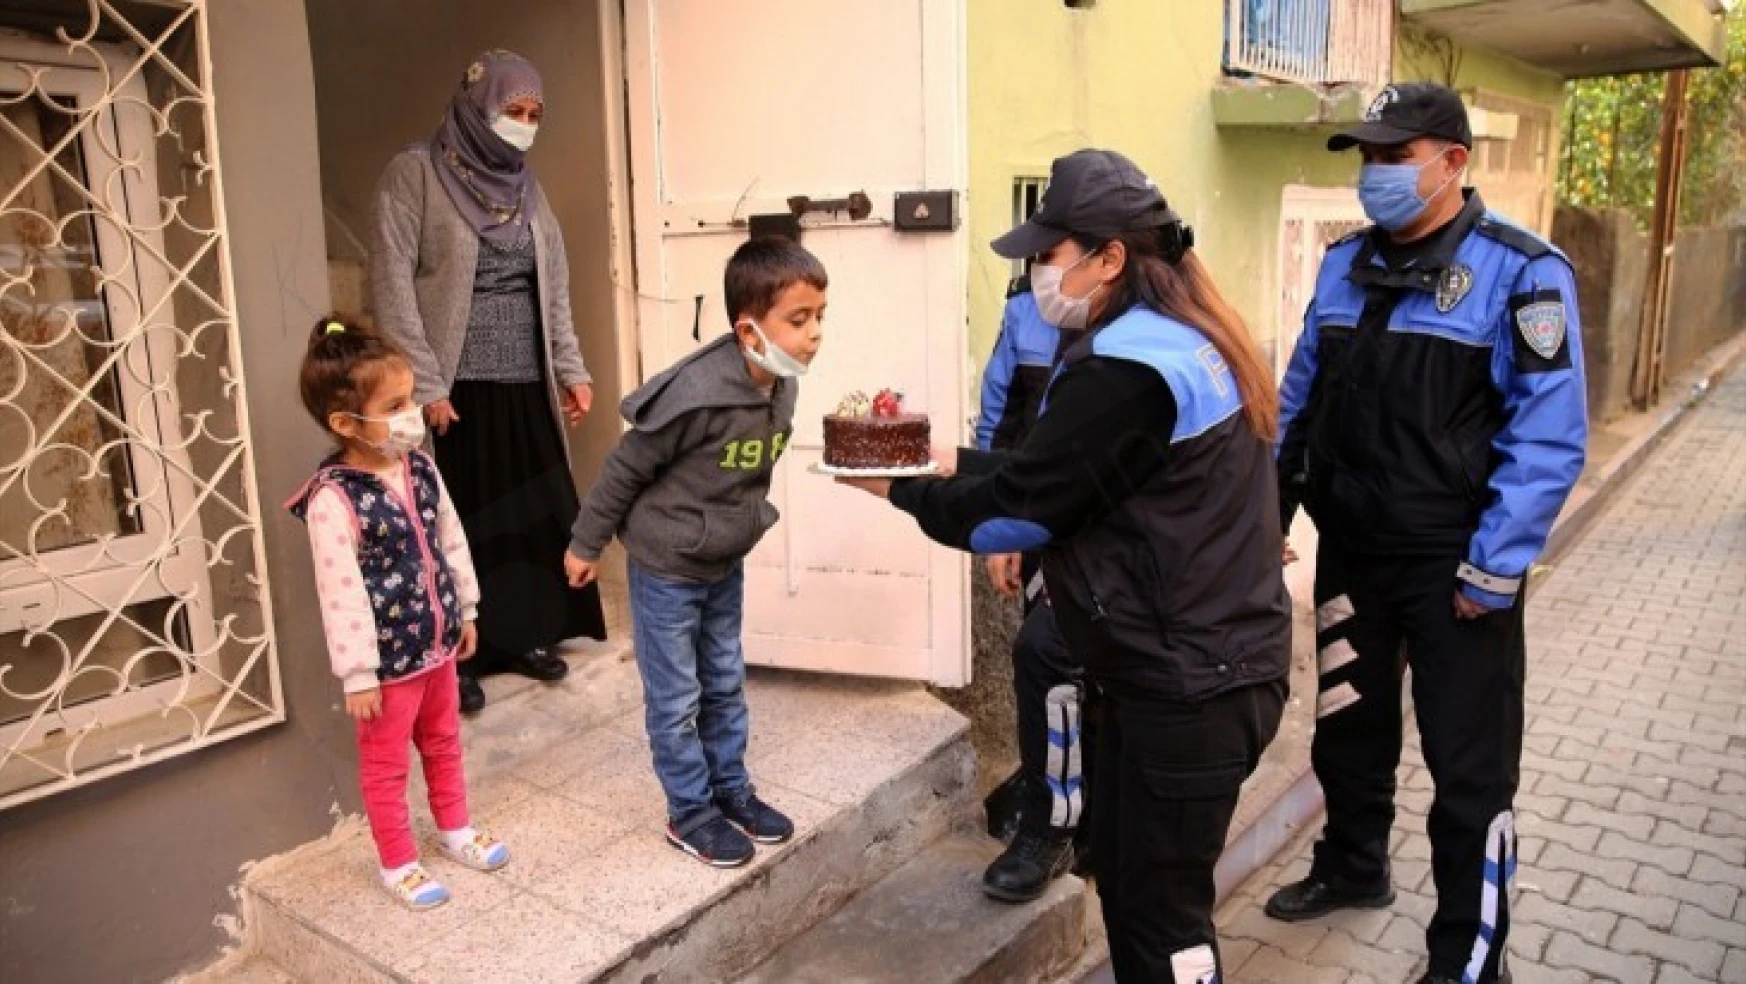 Polisten 7 yaşına giren çocuğa sürpriz doğum günü kutlaması